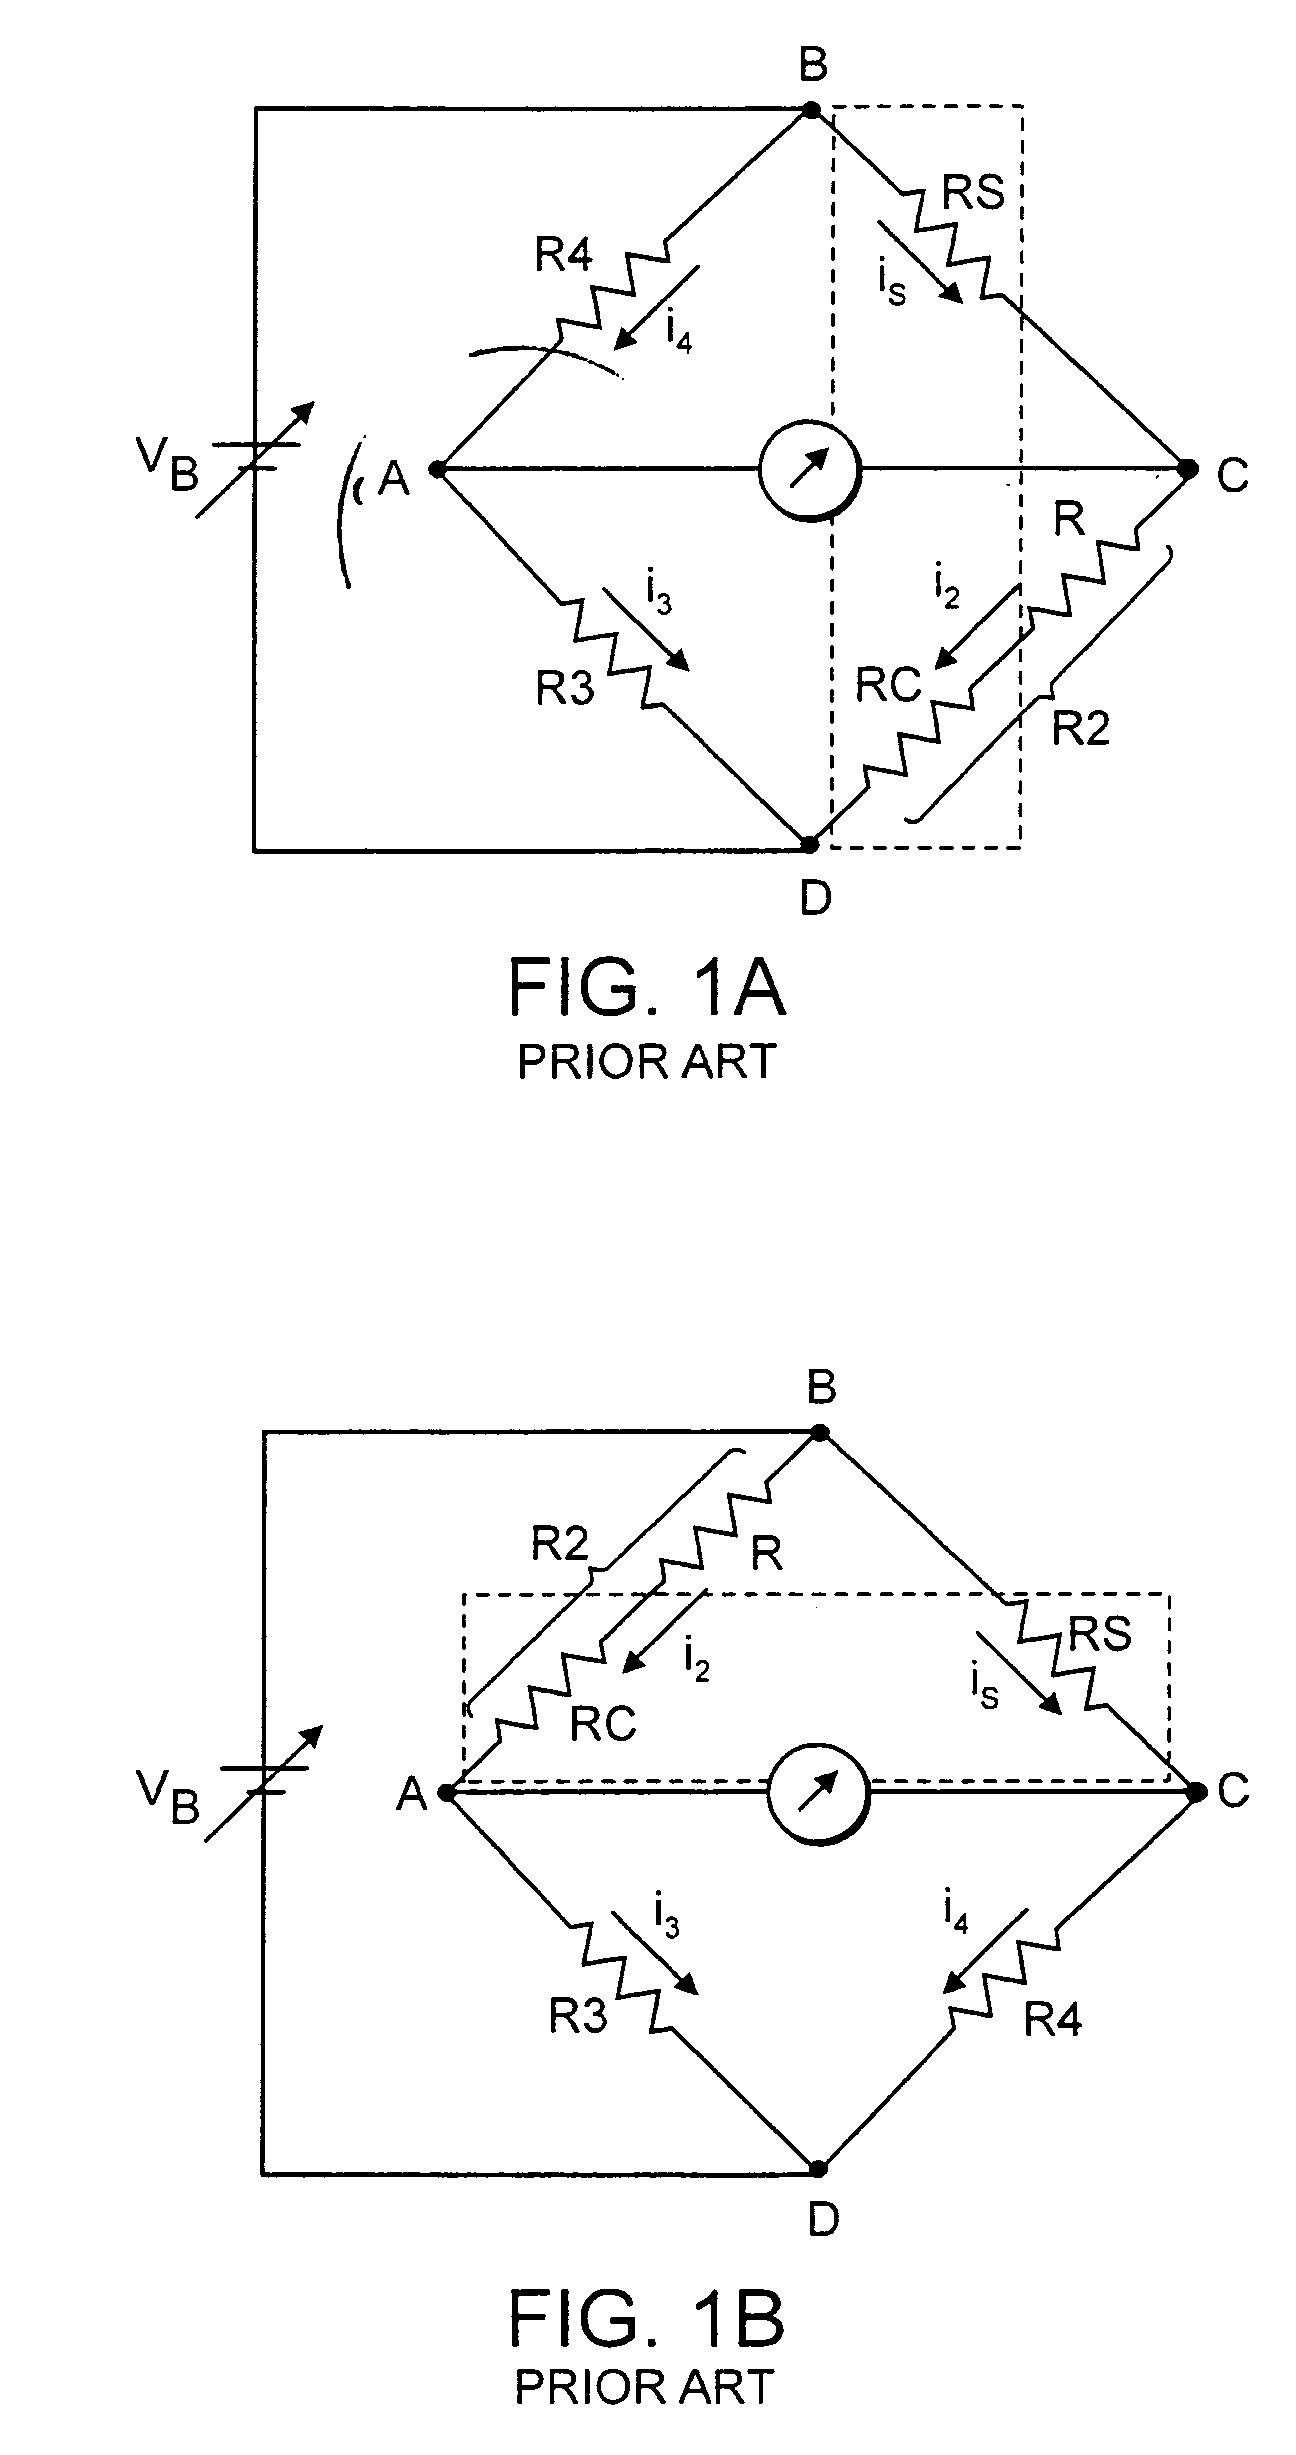 Technique for improving Pirani gauge temperature compensation over its full pressure range